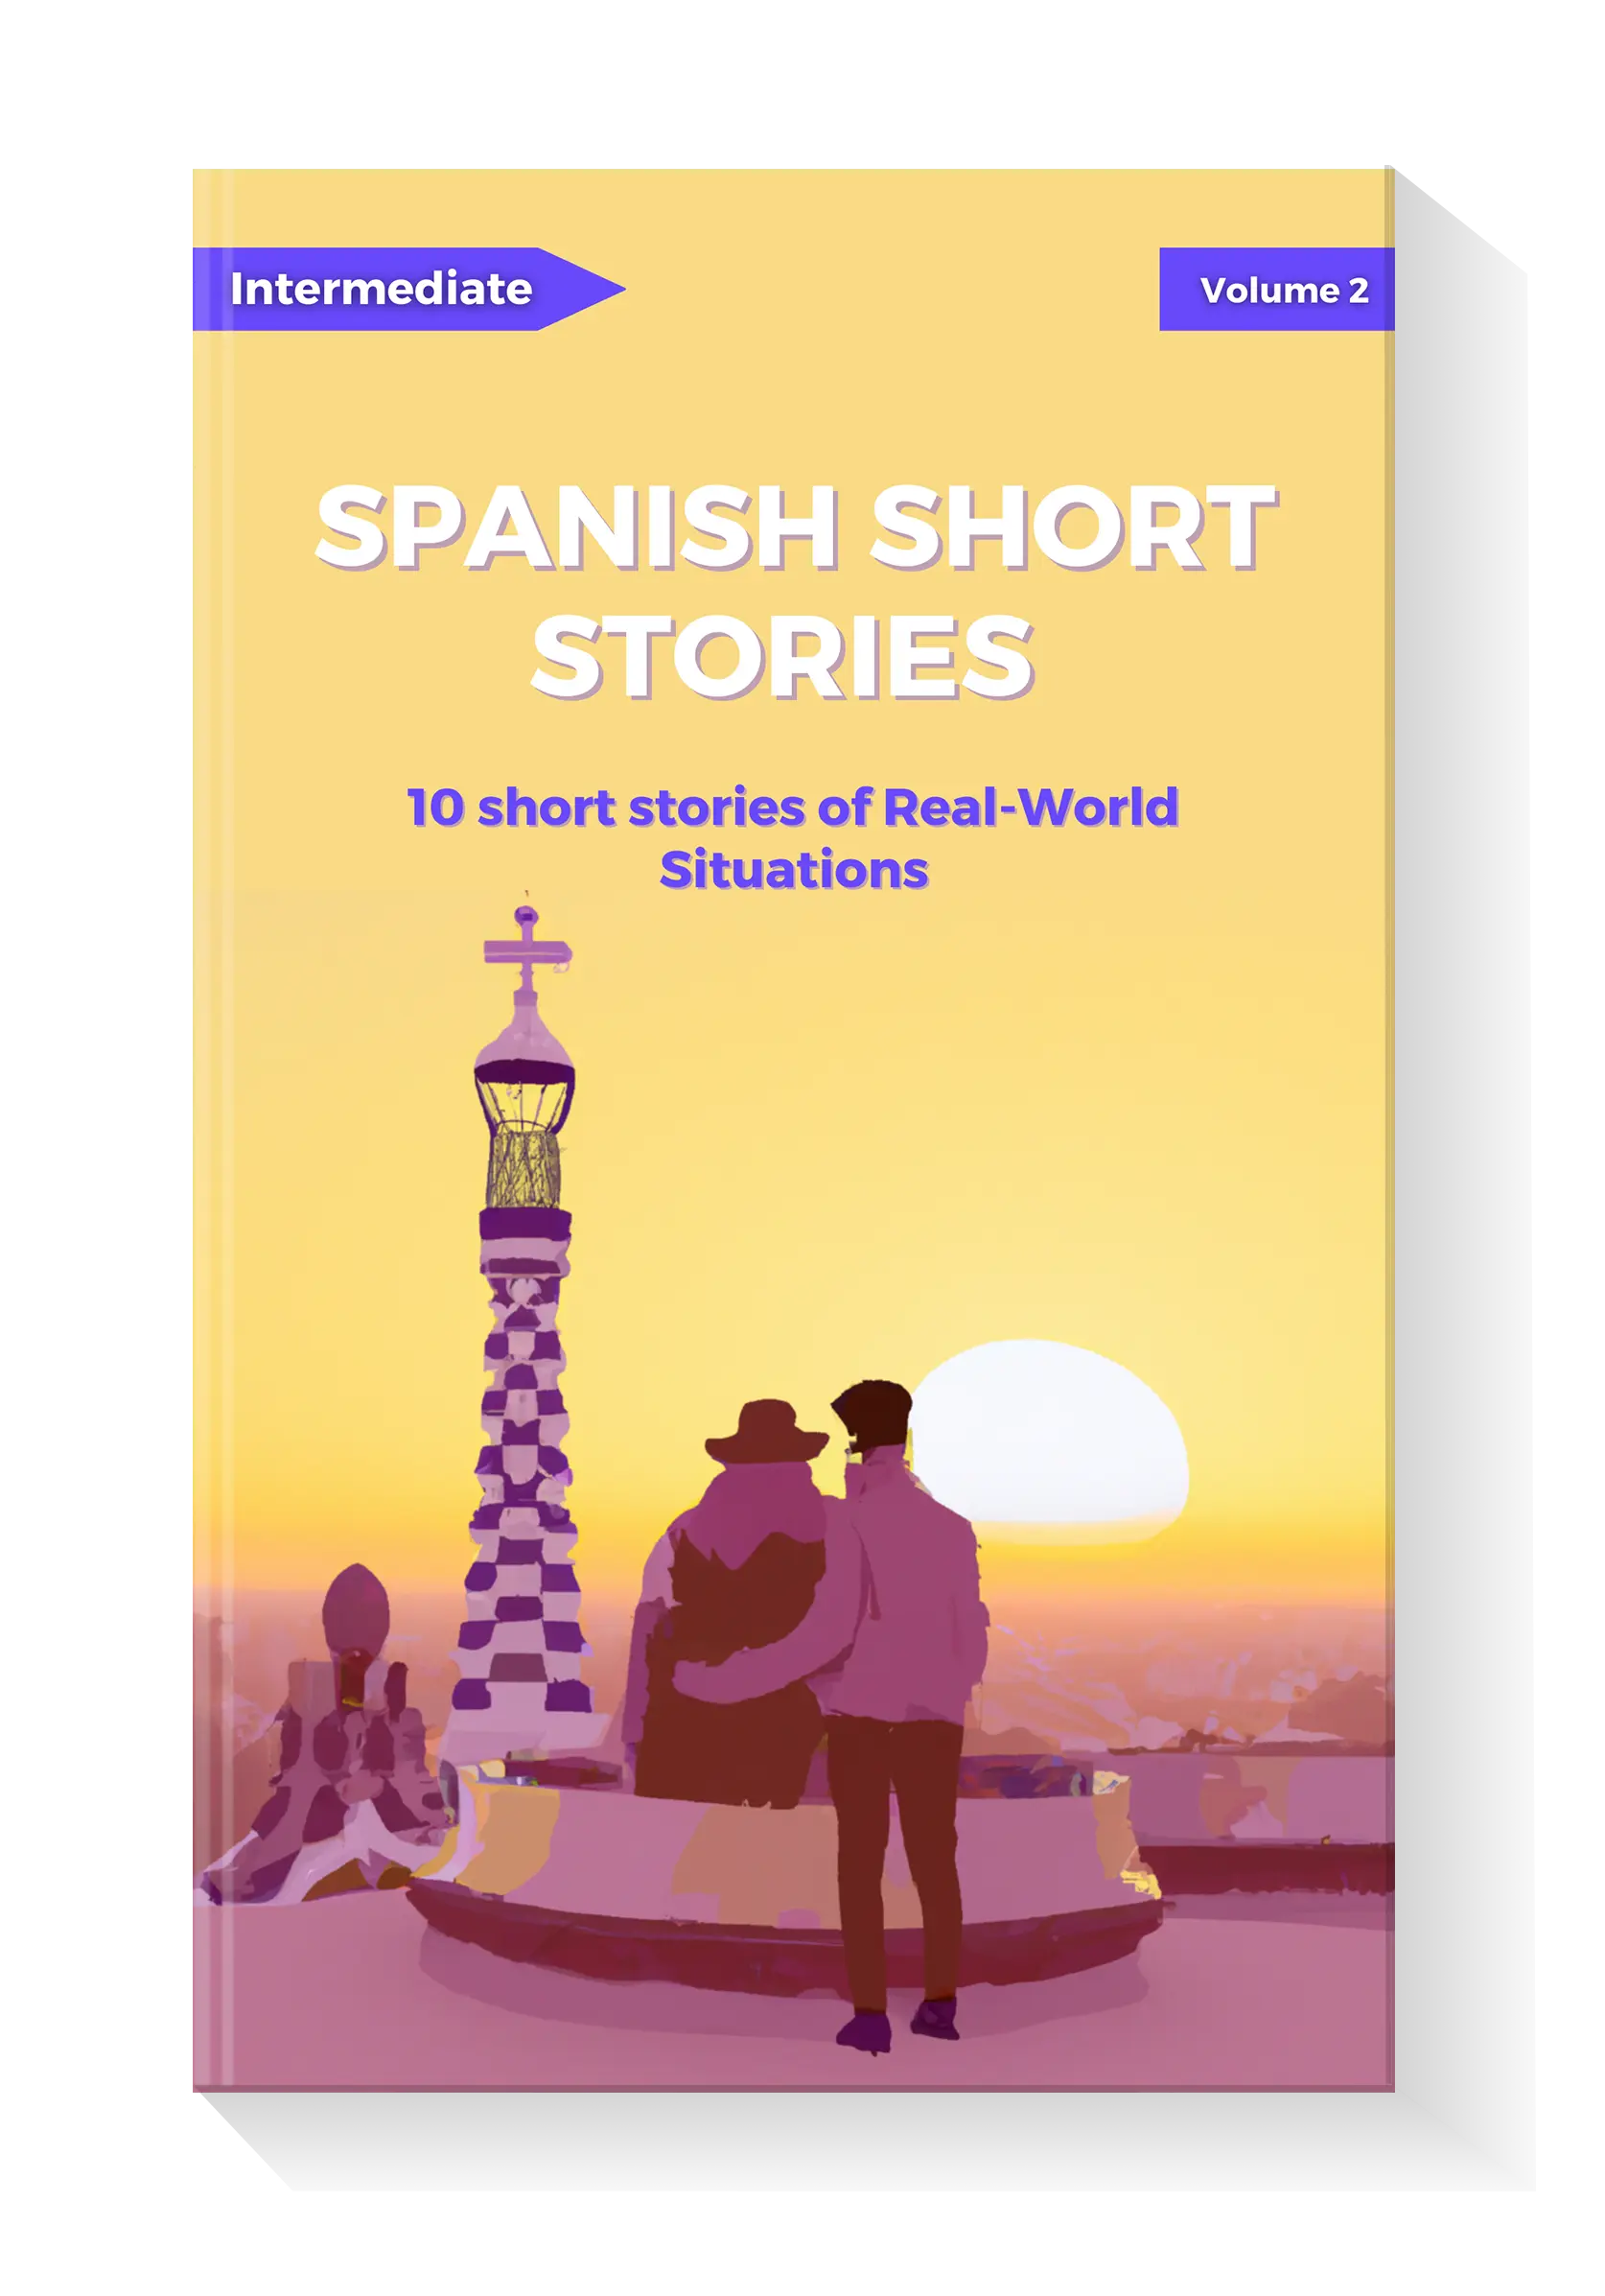 Cuentos para entender el mundo 2 / Short Stories to Understand the World  (Book 2) (Spanish Edition)